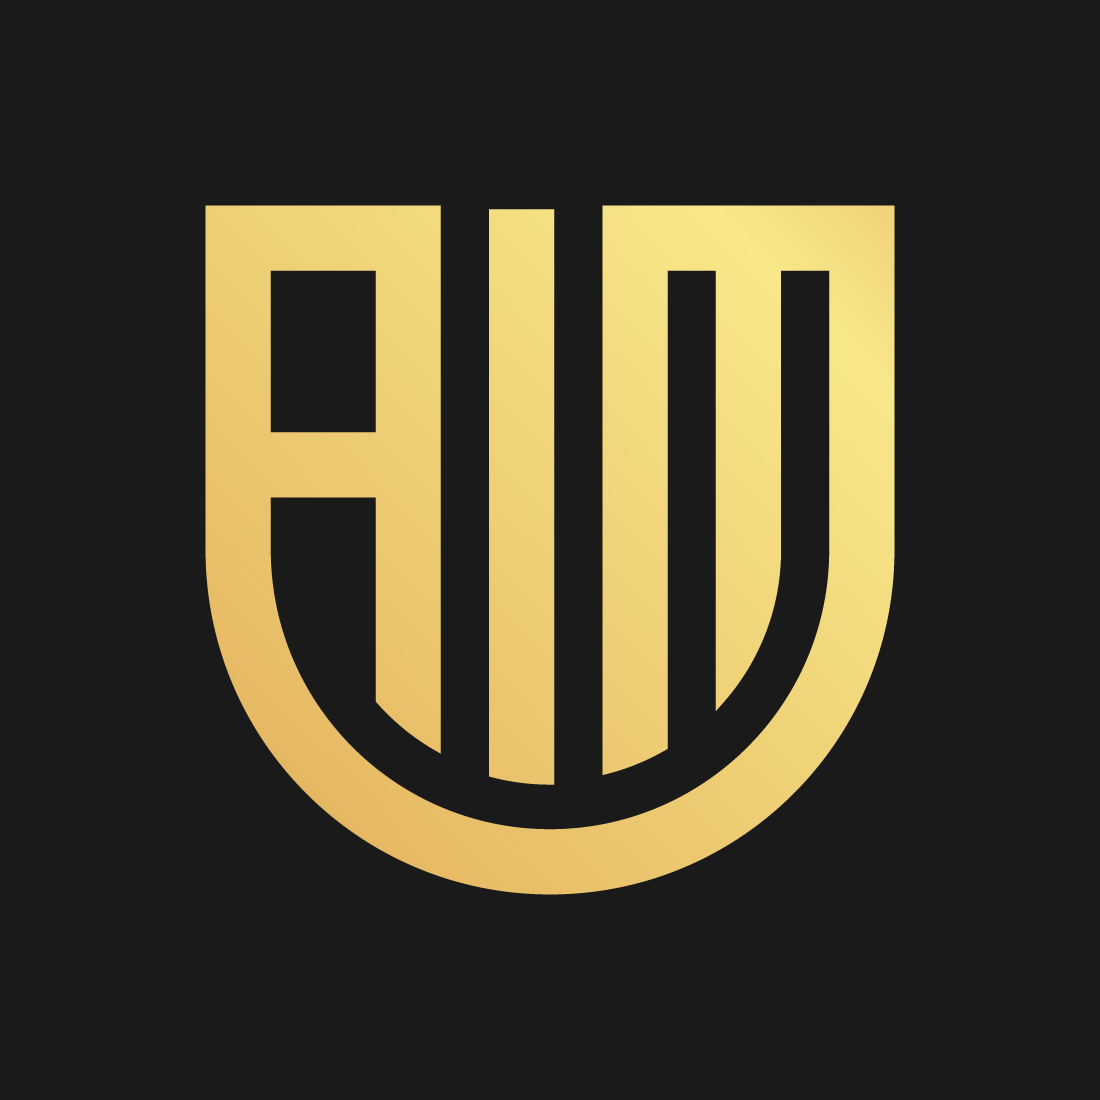 AIM logo design preview image.